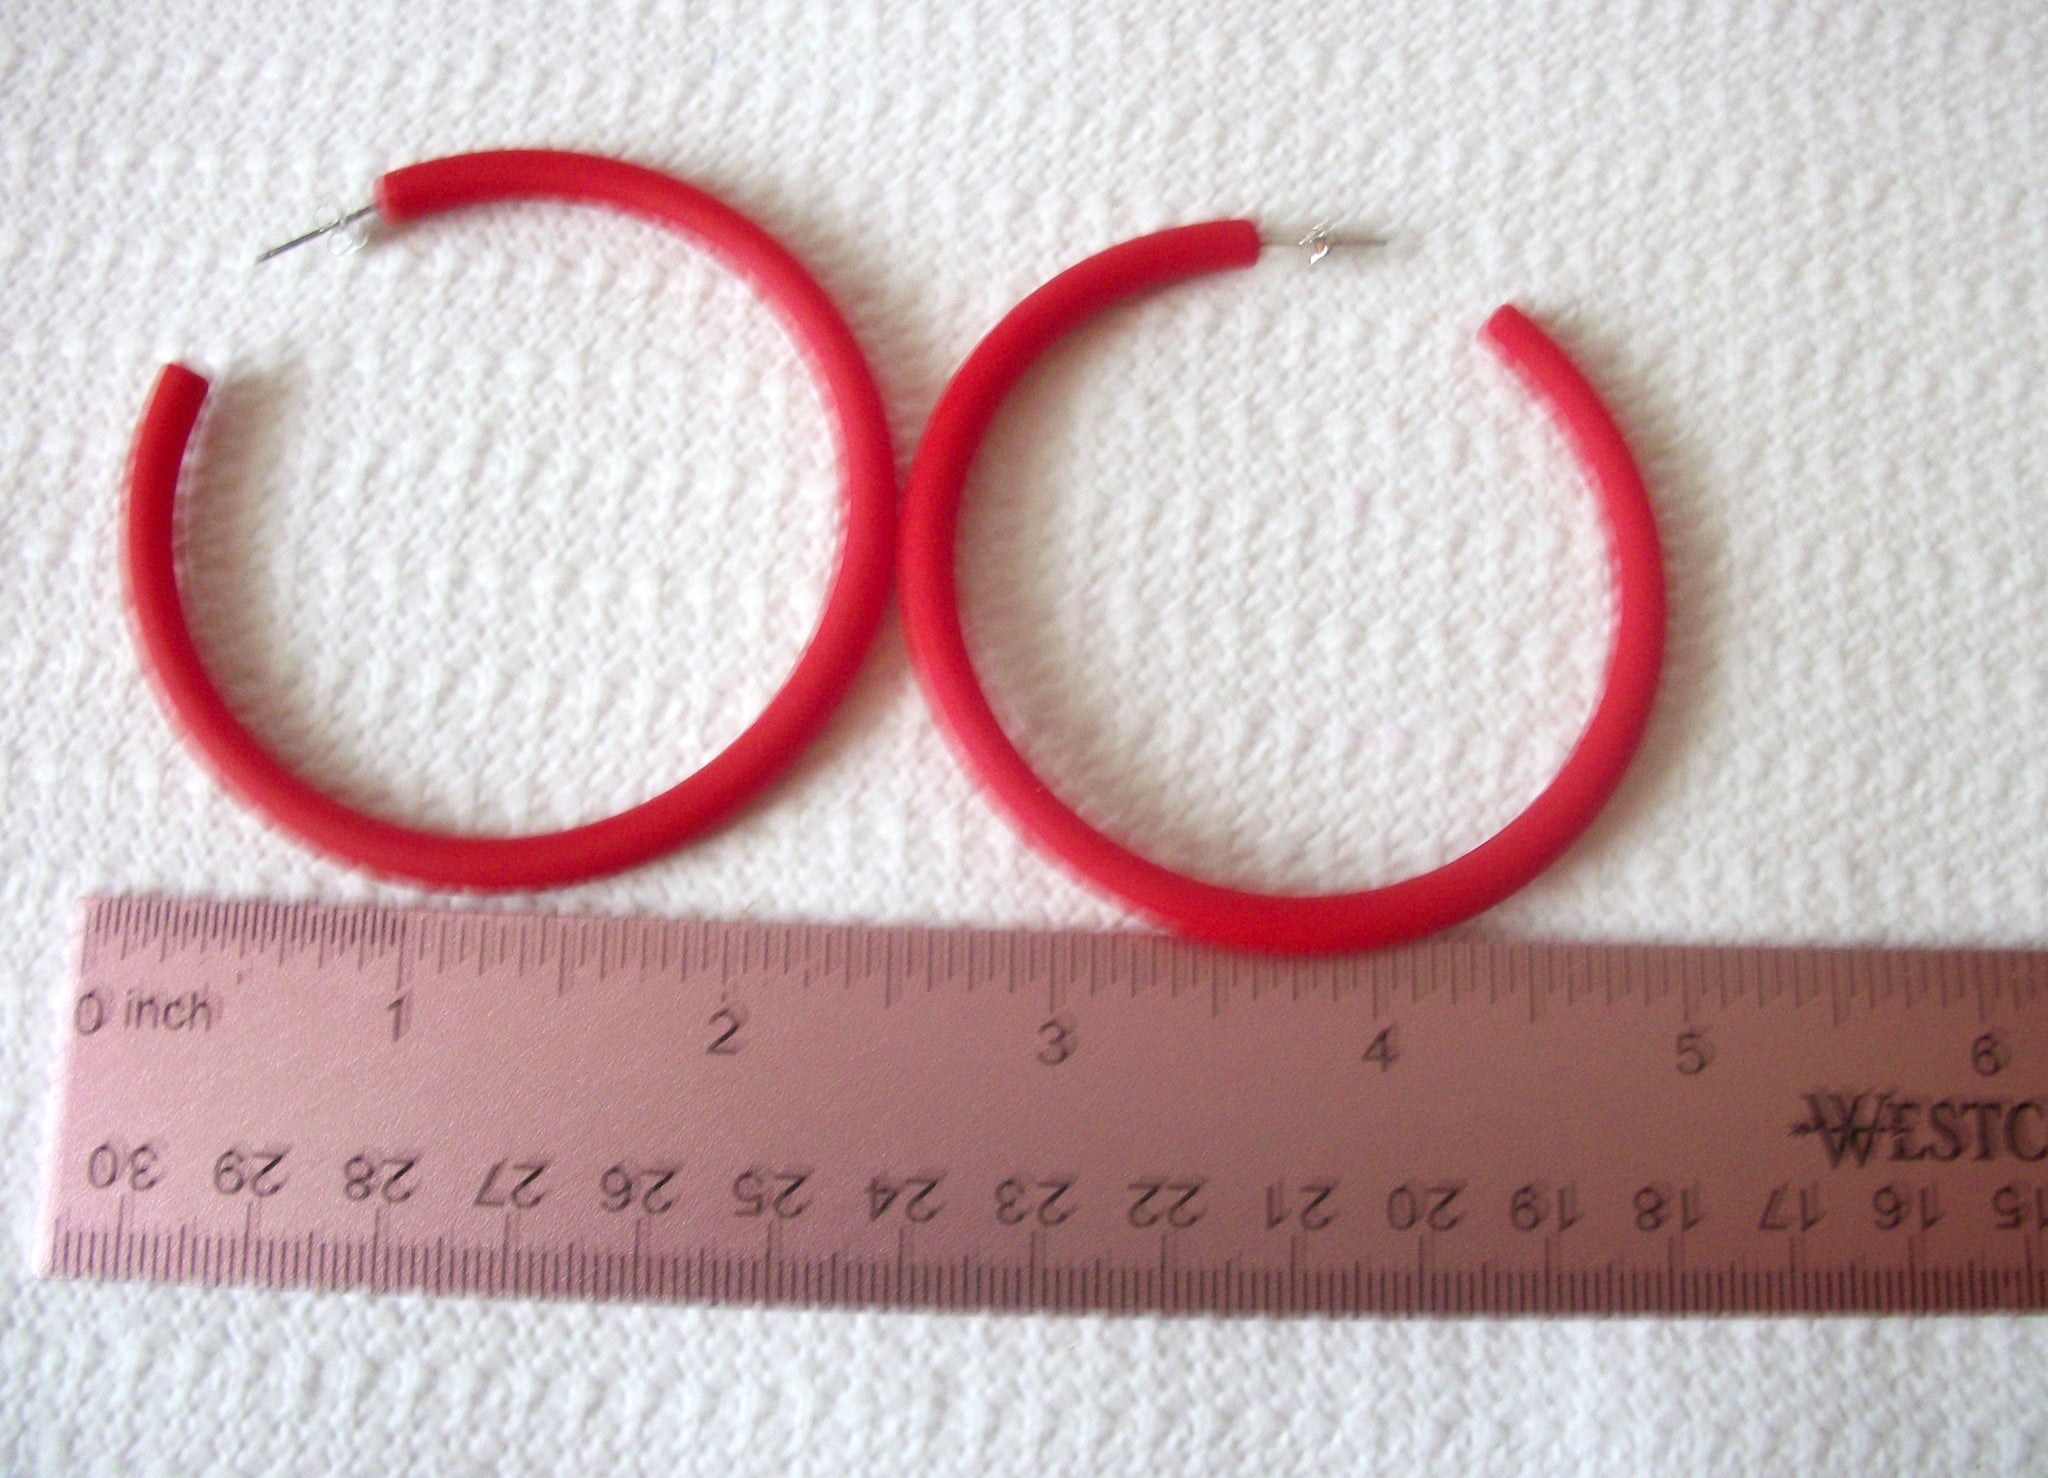 Susan Red Big Hoop Earrings, Acetate Earrings, Resin Earrings, Acrylic, Statement Earrings S14